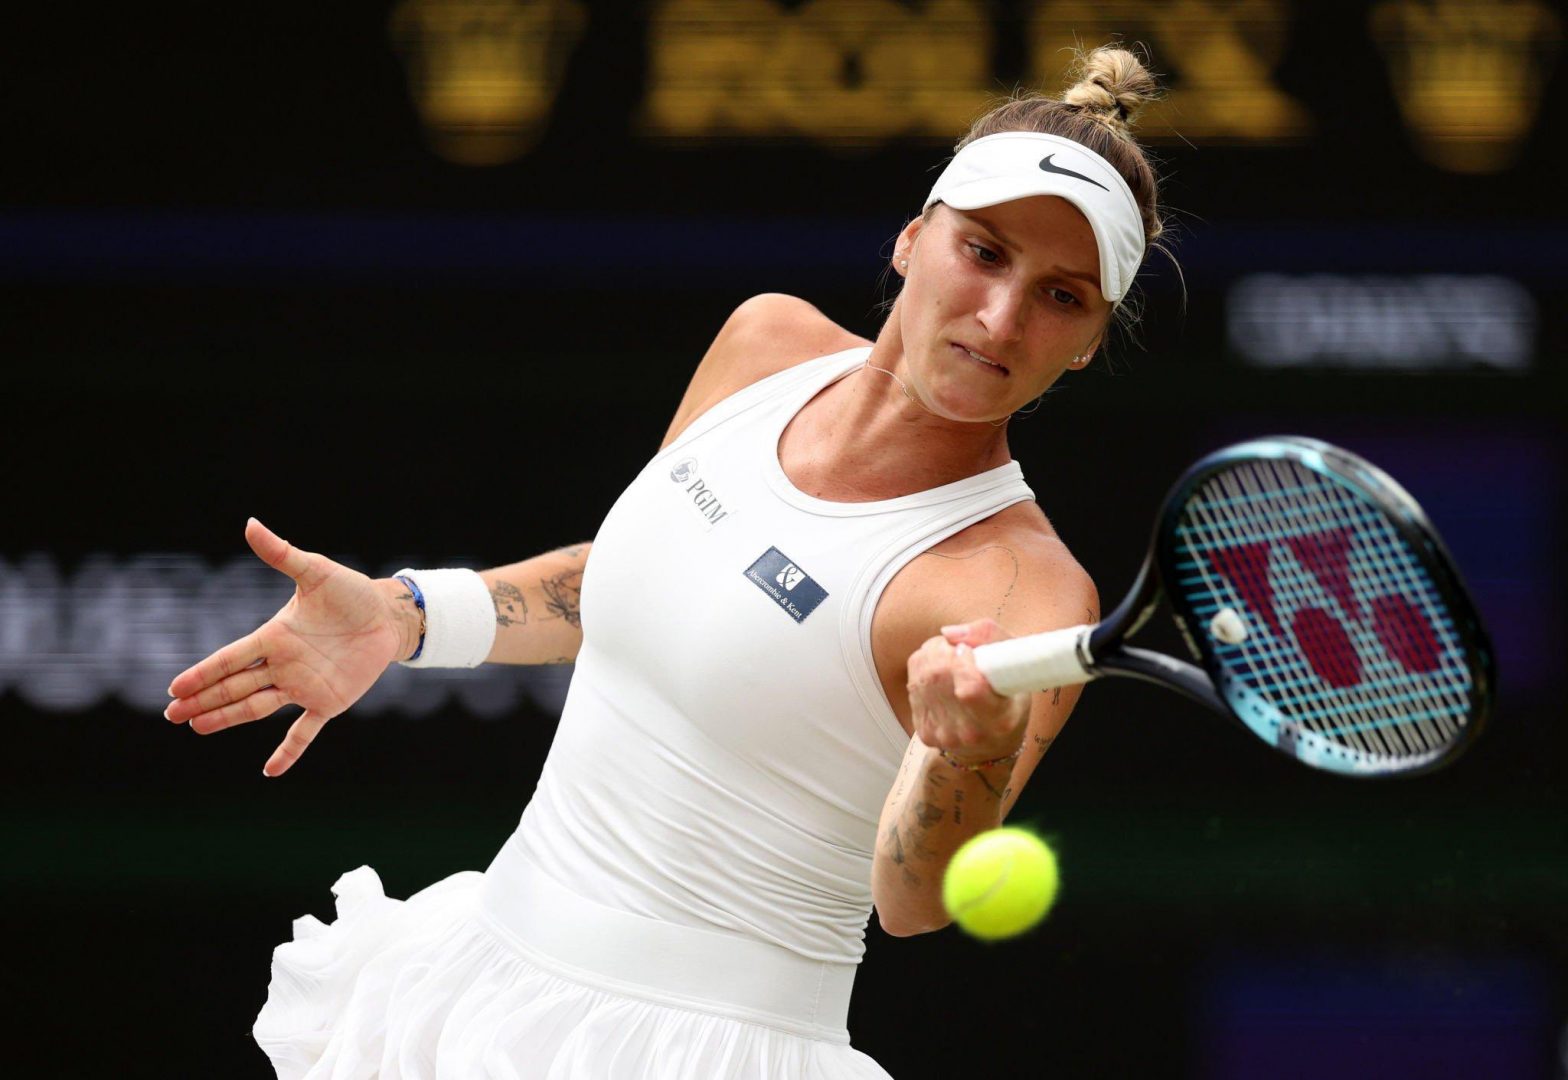 Markéta Vondroušová creates history, beats Ons Jabuer in Wimbledon final to win her first grand slam | Watch video